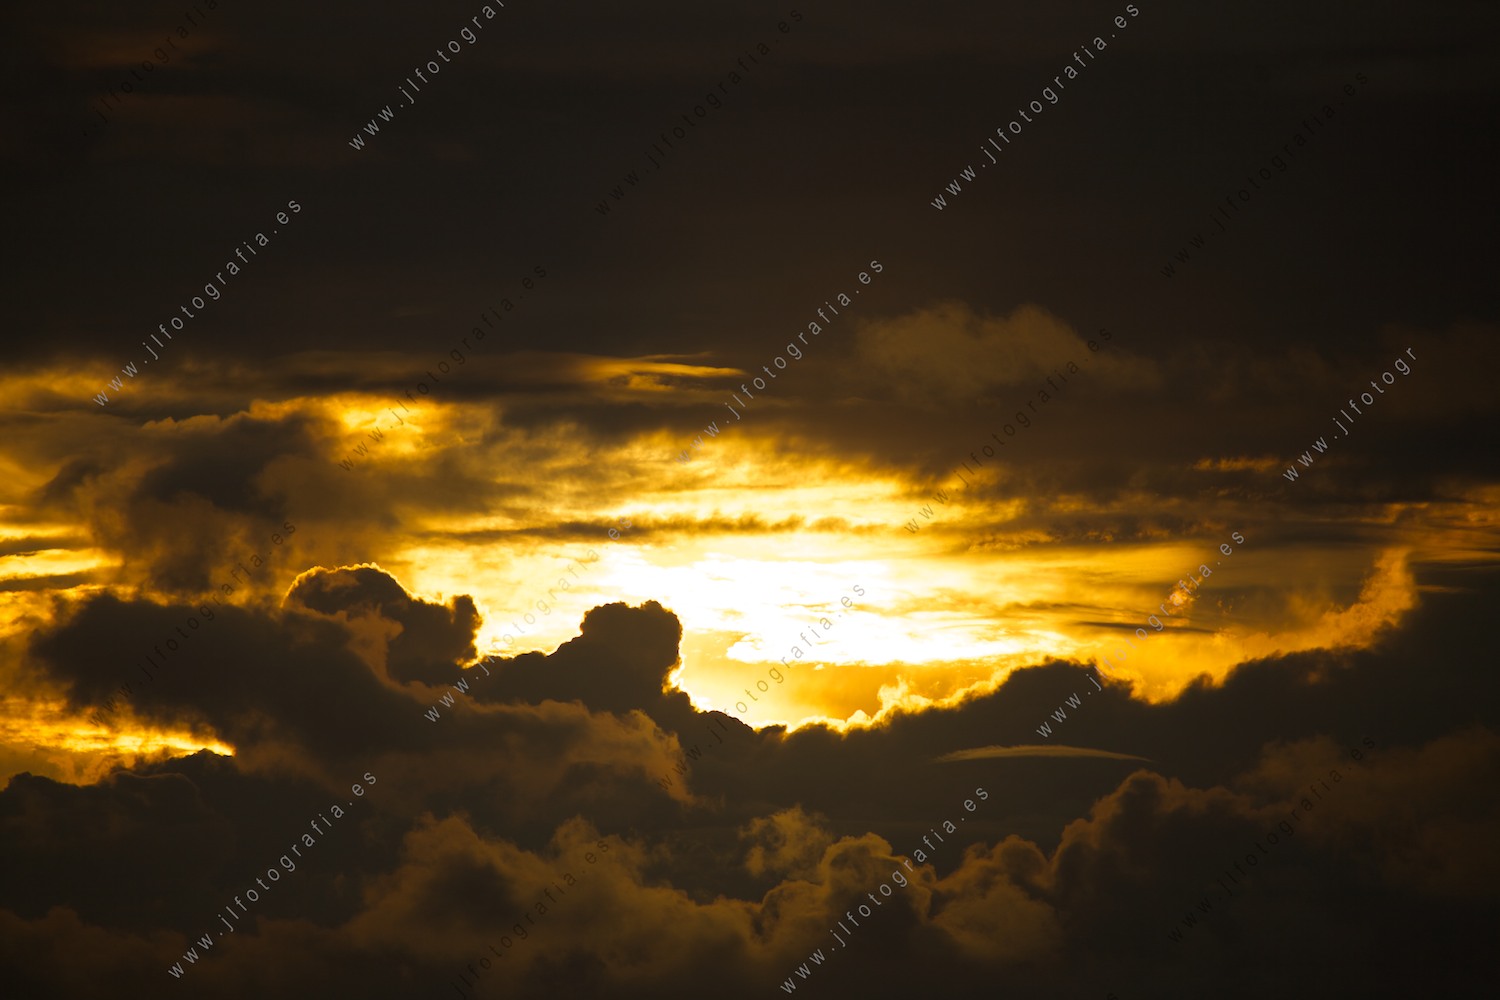 Cielo con las nubes cubriendo la puesta de sol con colores cálidos.